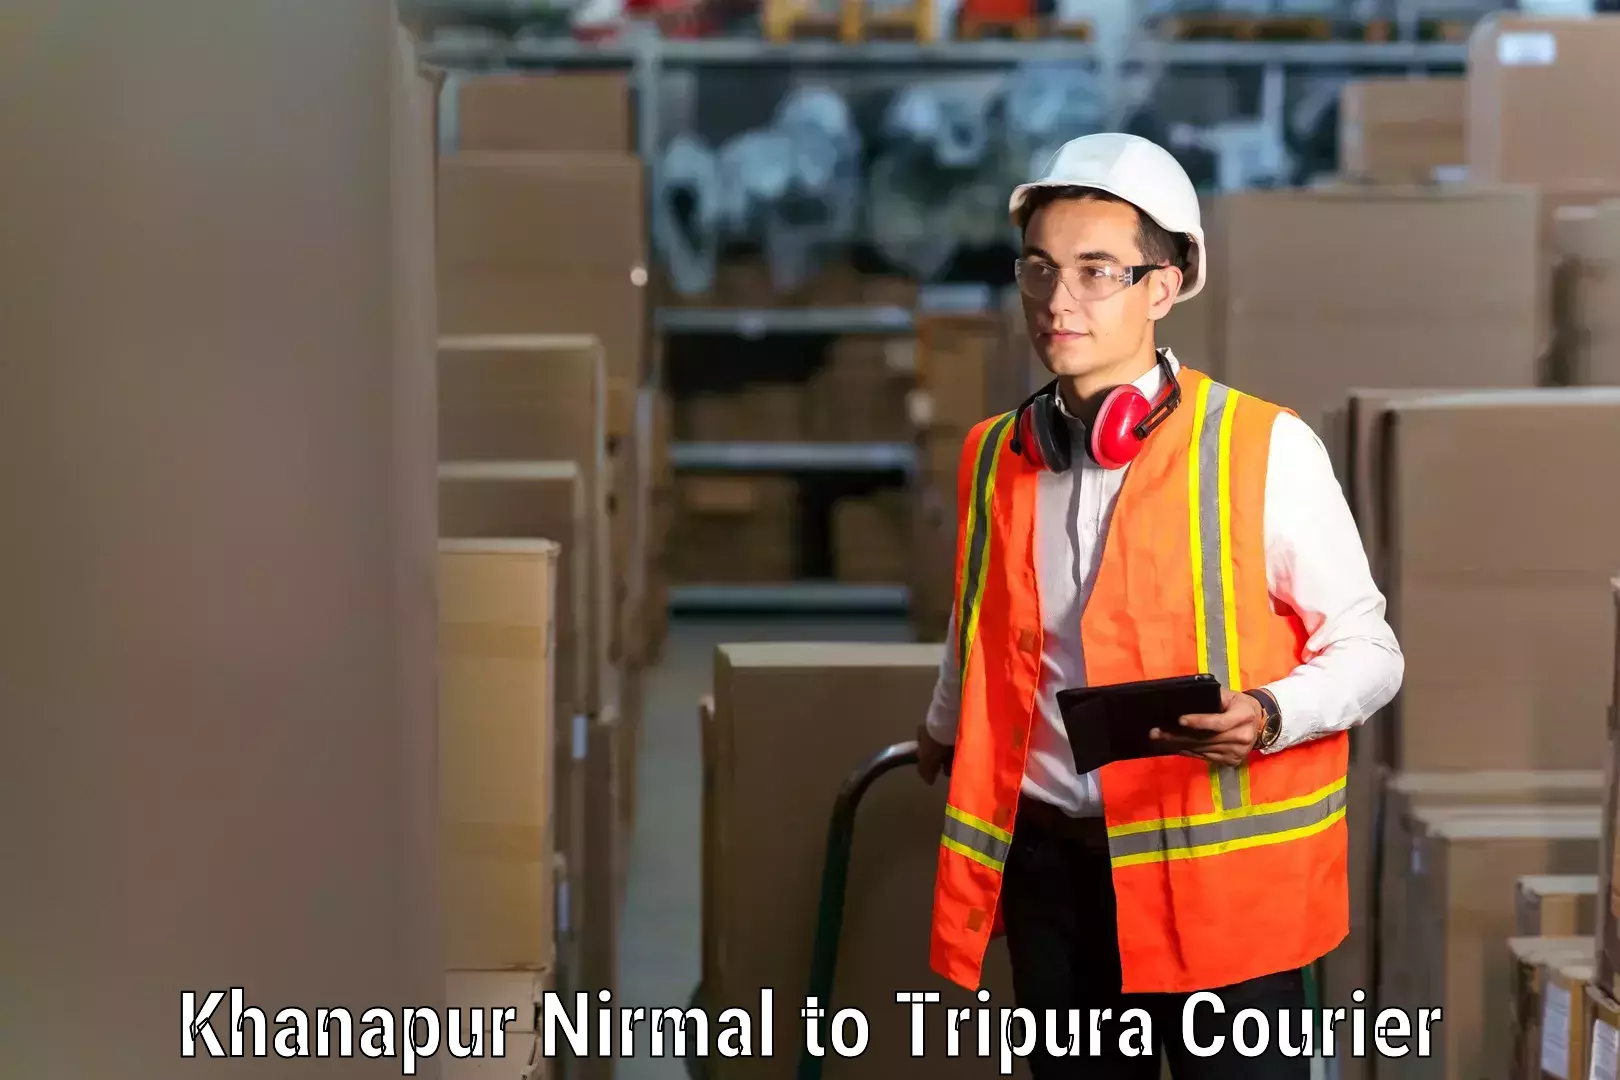 Furniture transport experts Khanapur Nirmal to Kamalpur